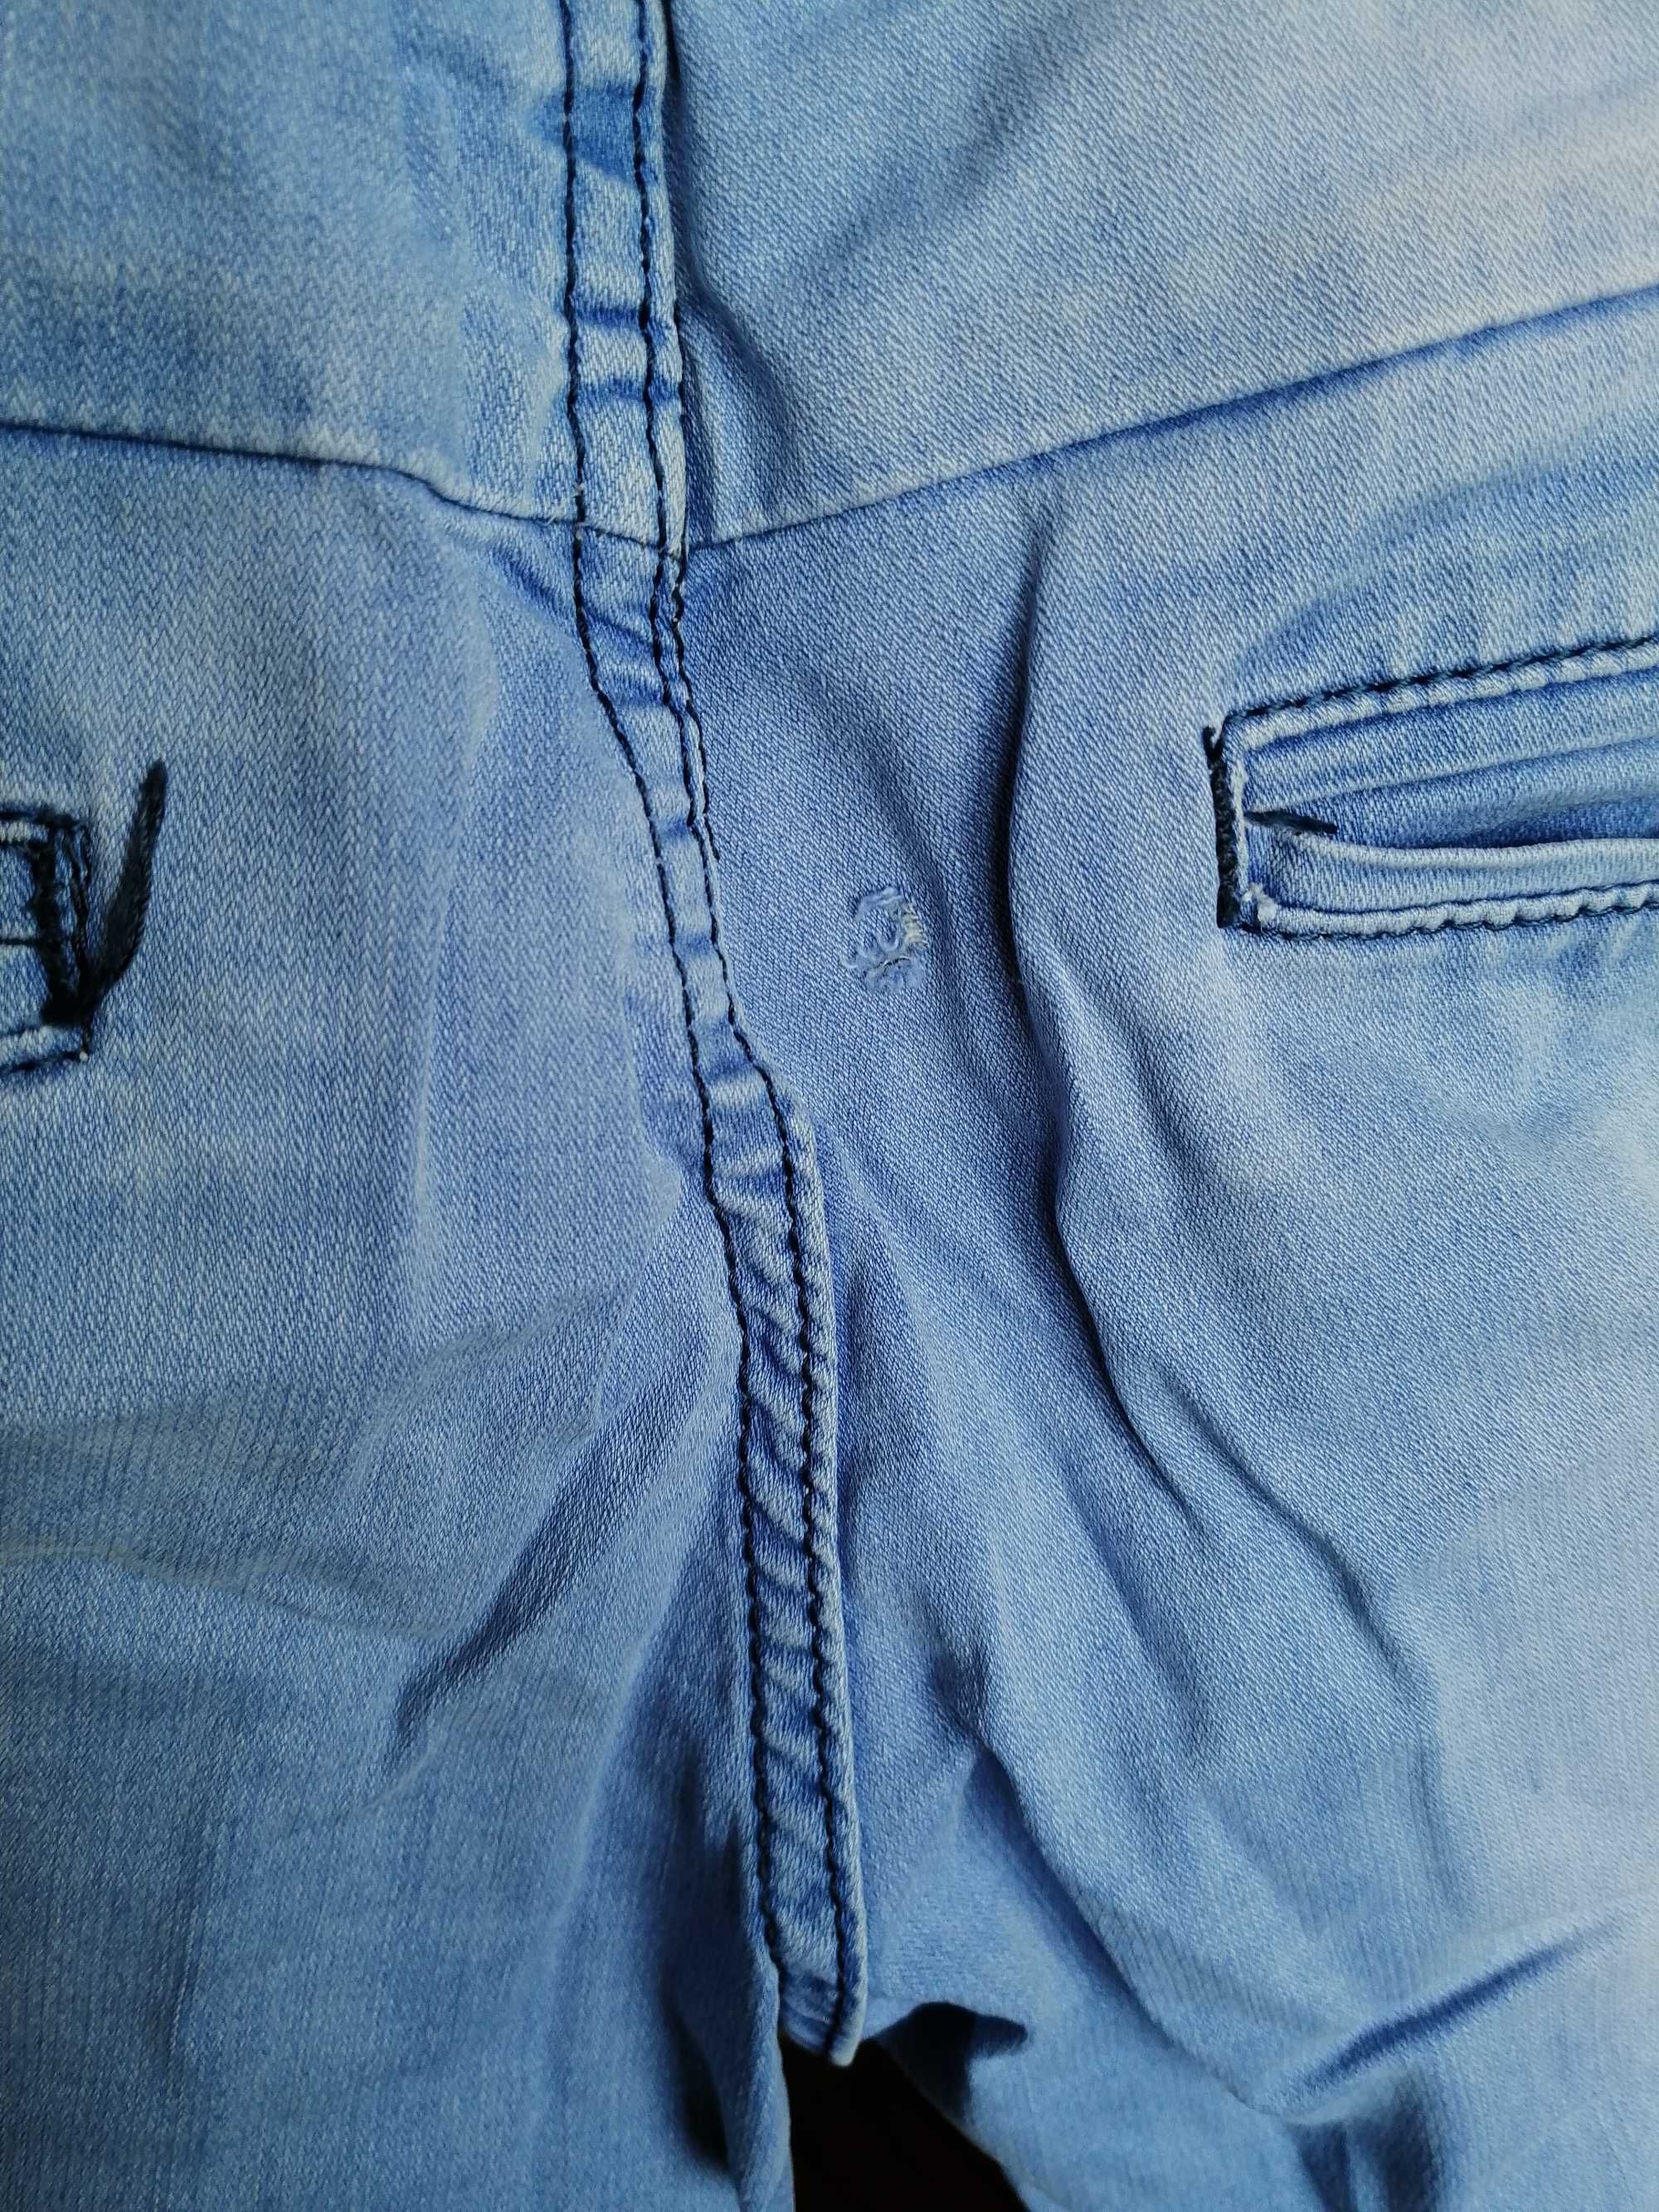 Мужские джинсовые шорты. Голубого цвета.